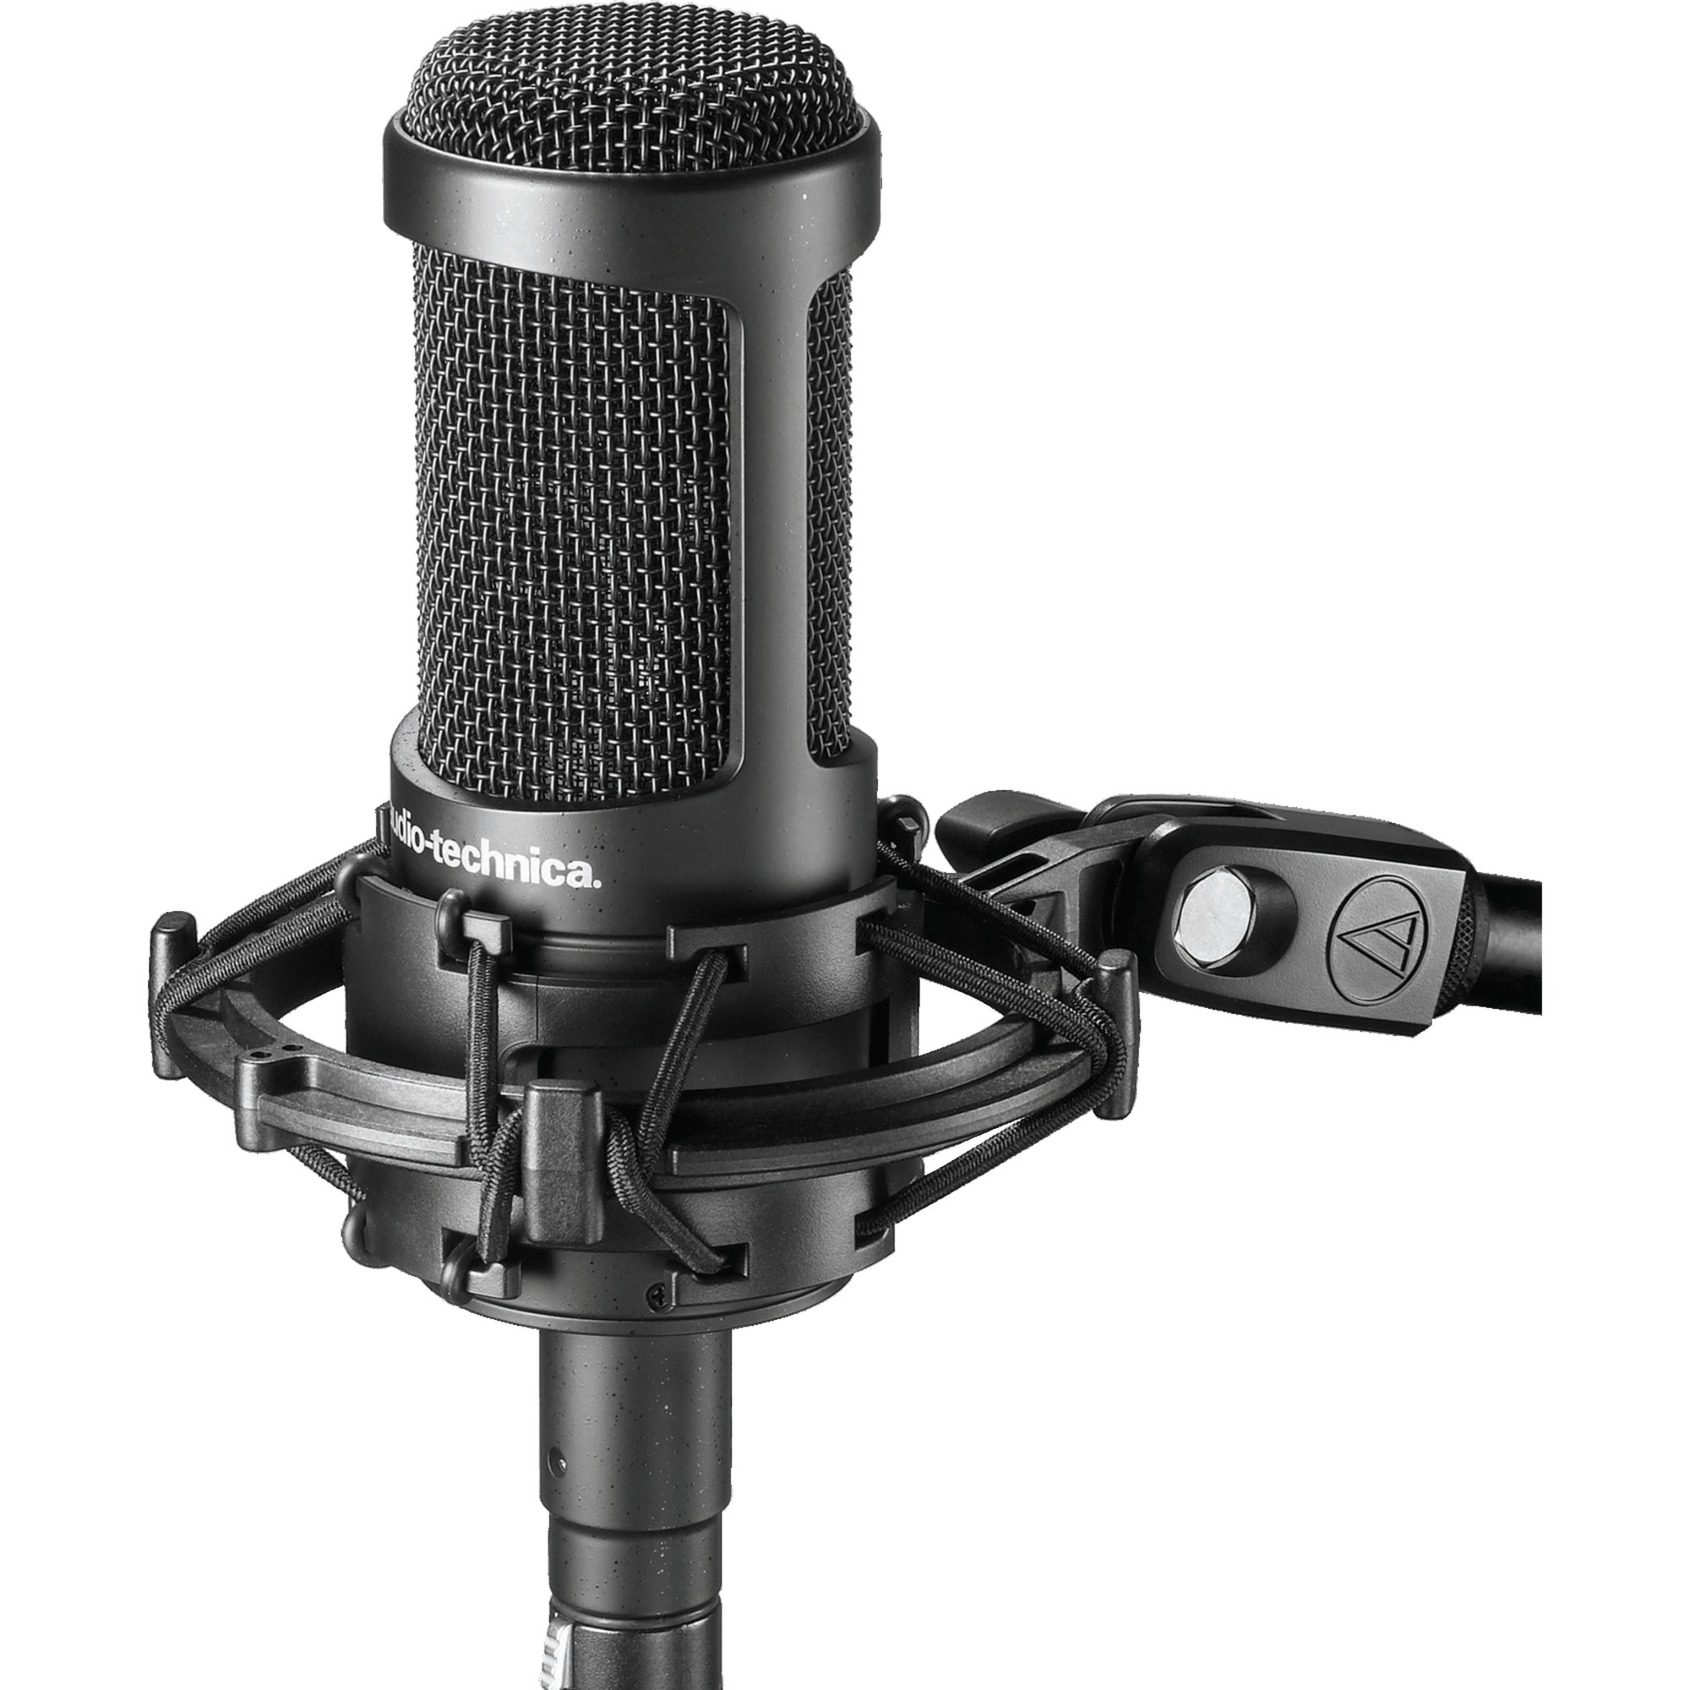 Image of Alternate - AT2050, Mikrofon online einkaufen bei Alternate